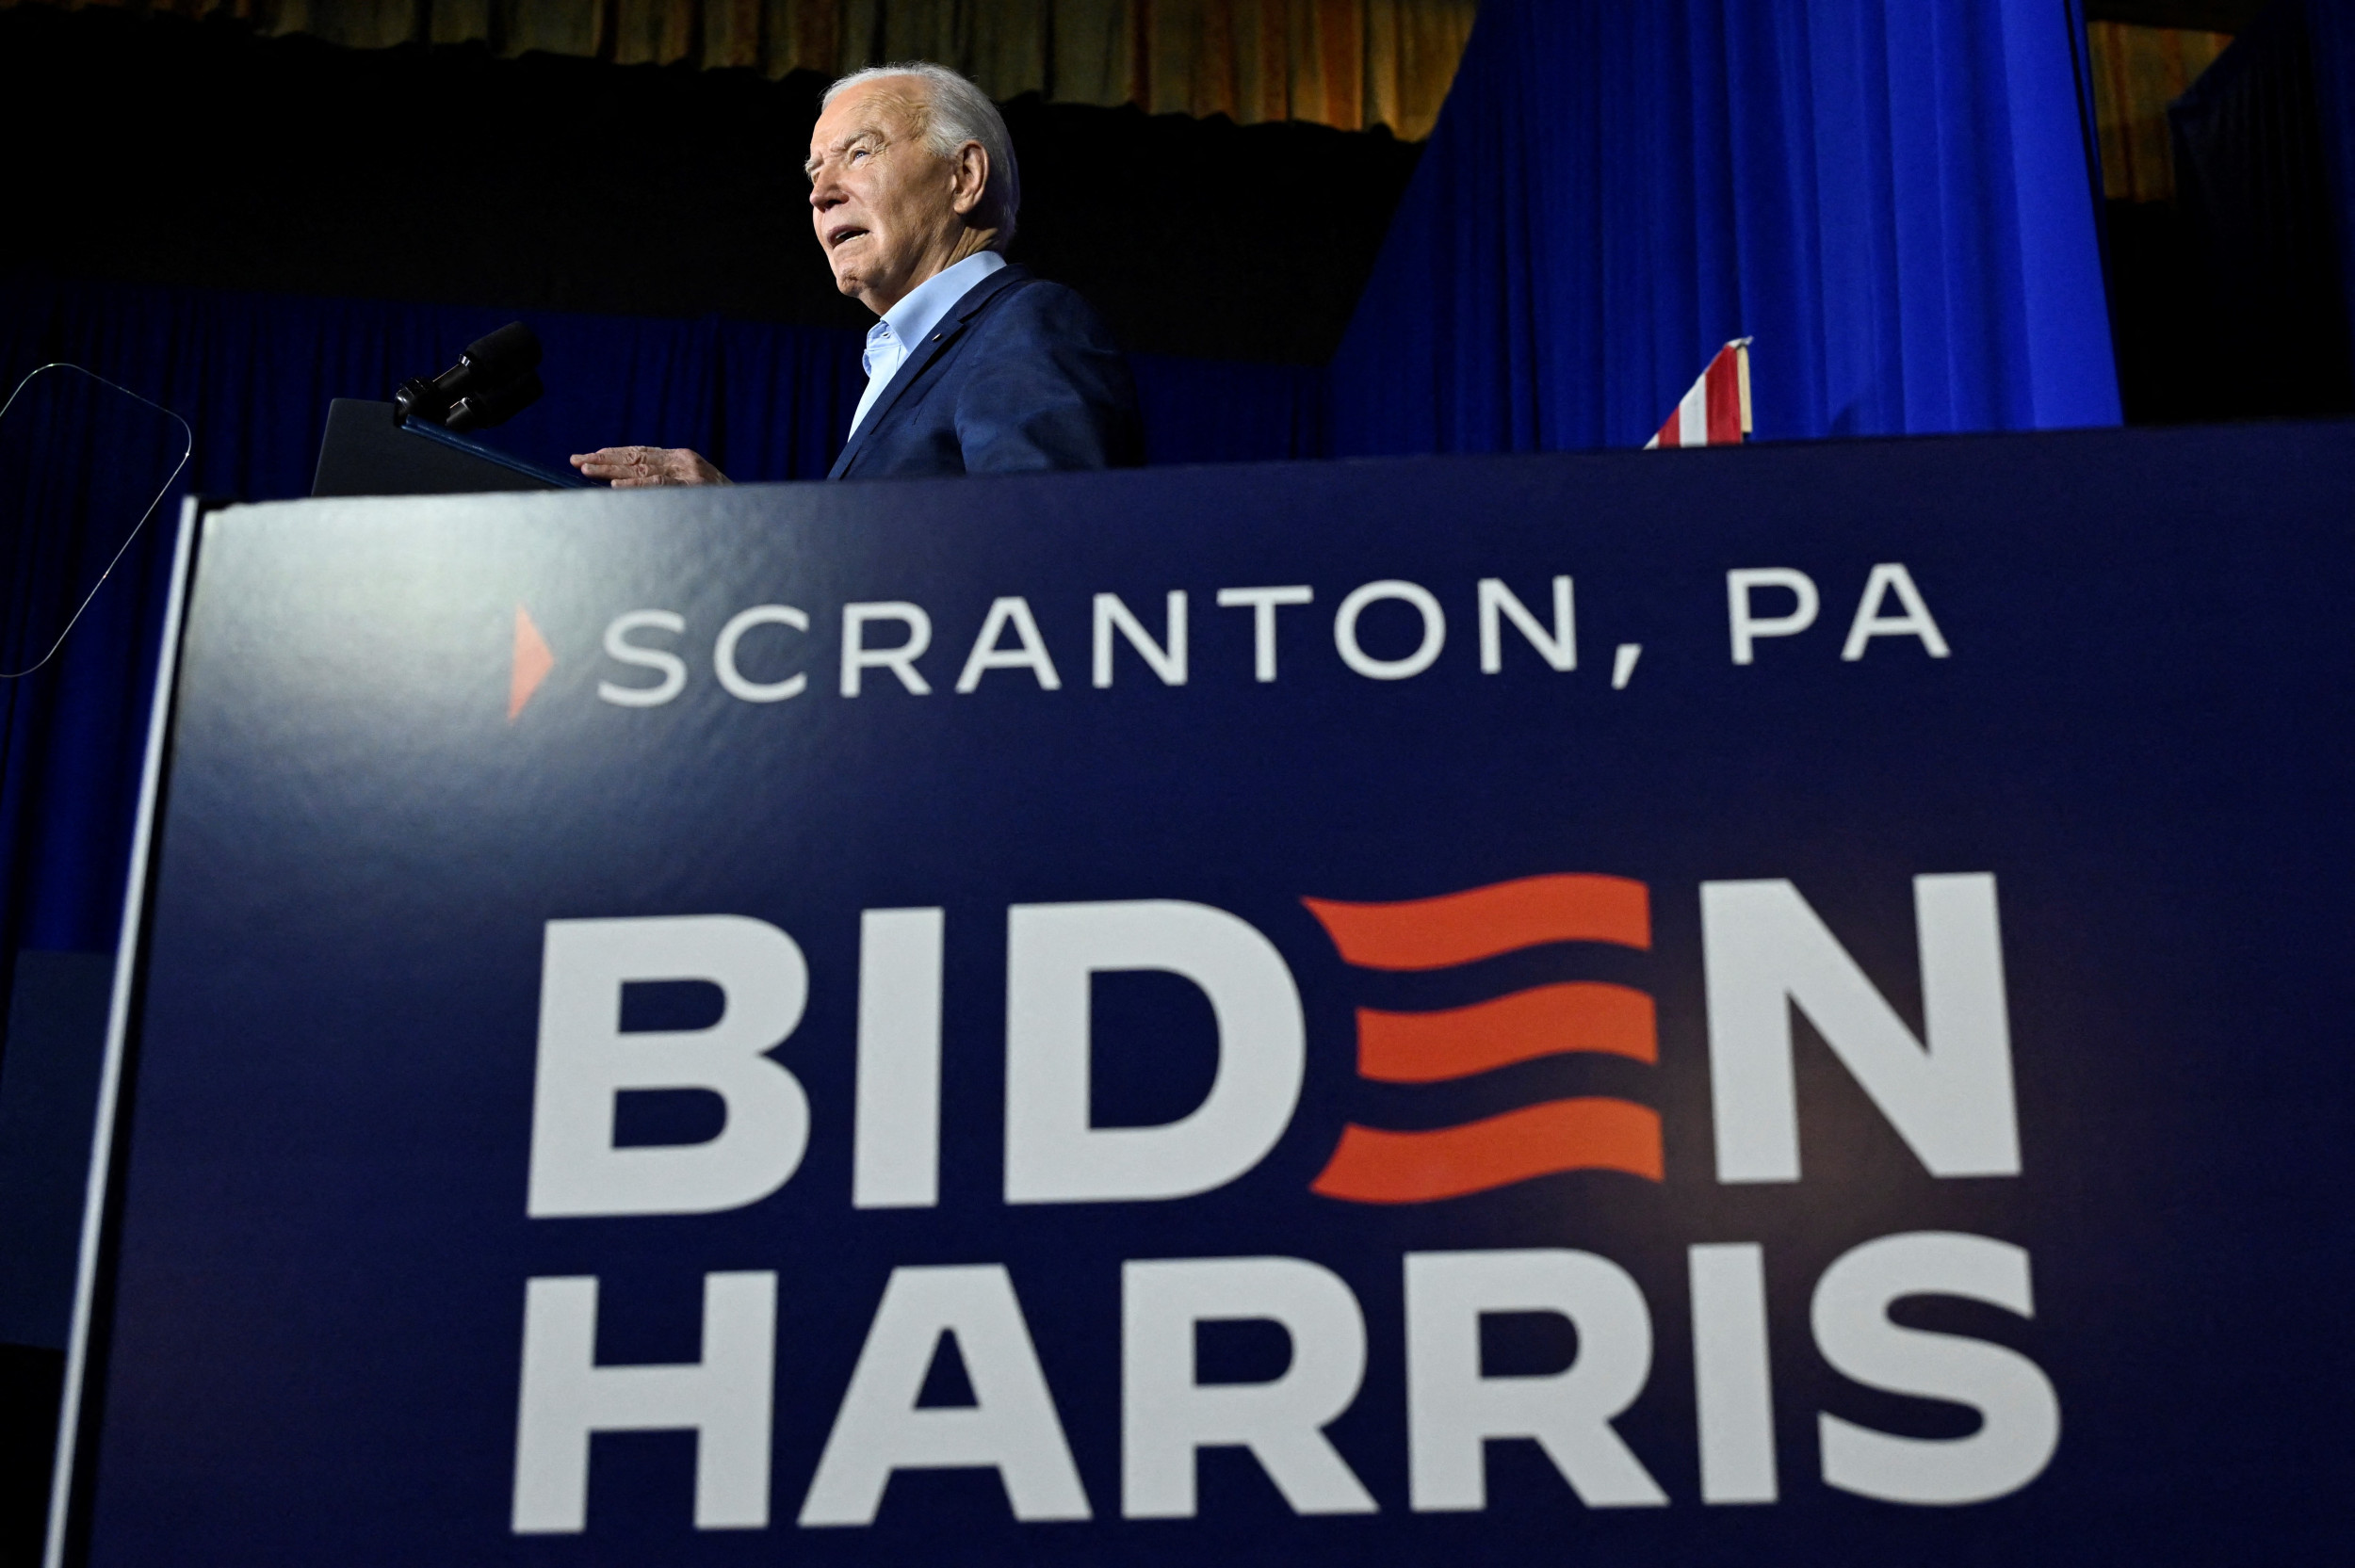 ¿Joe Biden habló ante asientos vacíos en Scranton?  Una foto del evento se vuelve viral